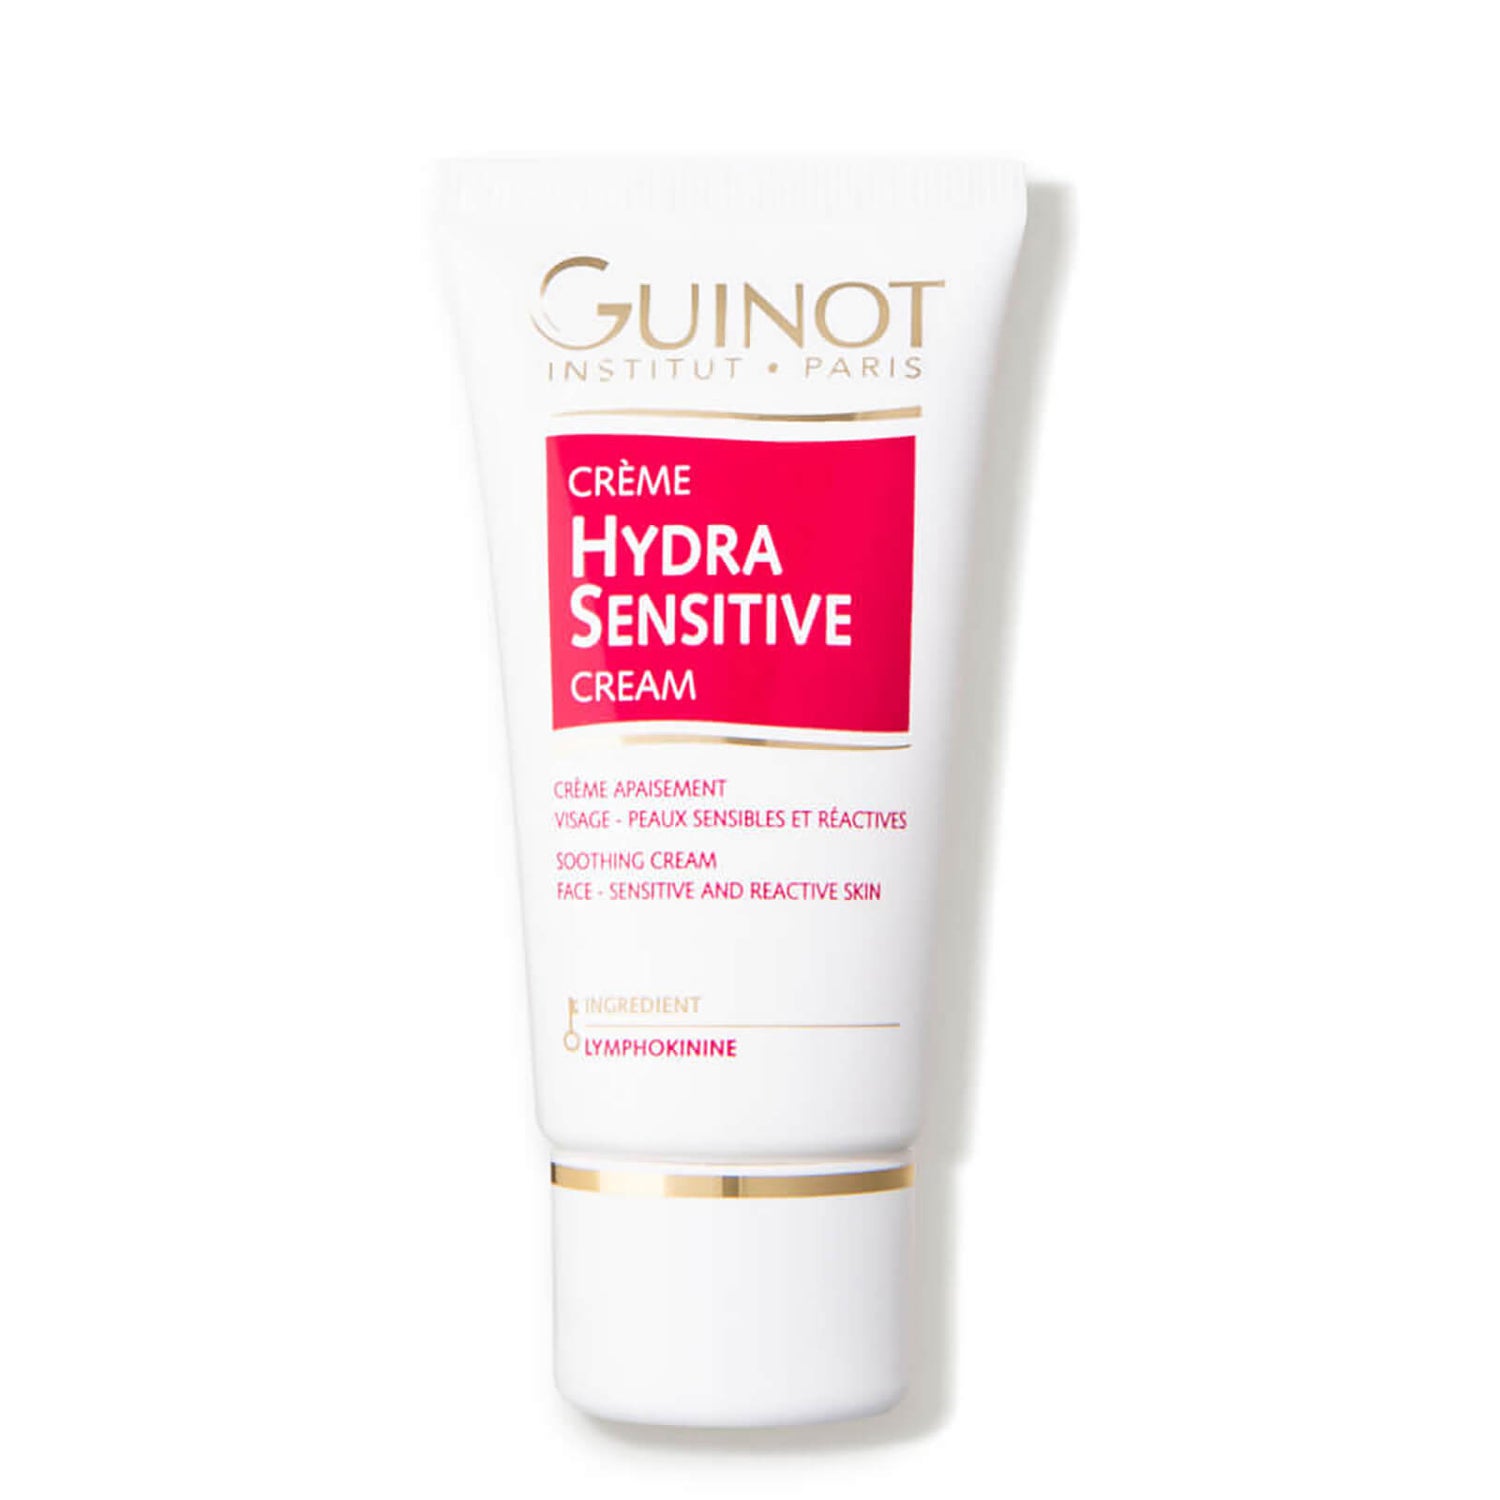 Guinot Crème Hydra Sensitive (1.7 oz.)